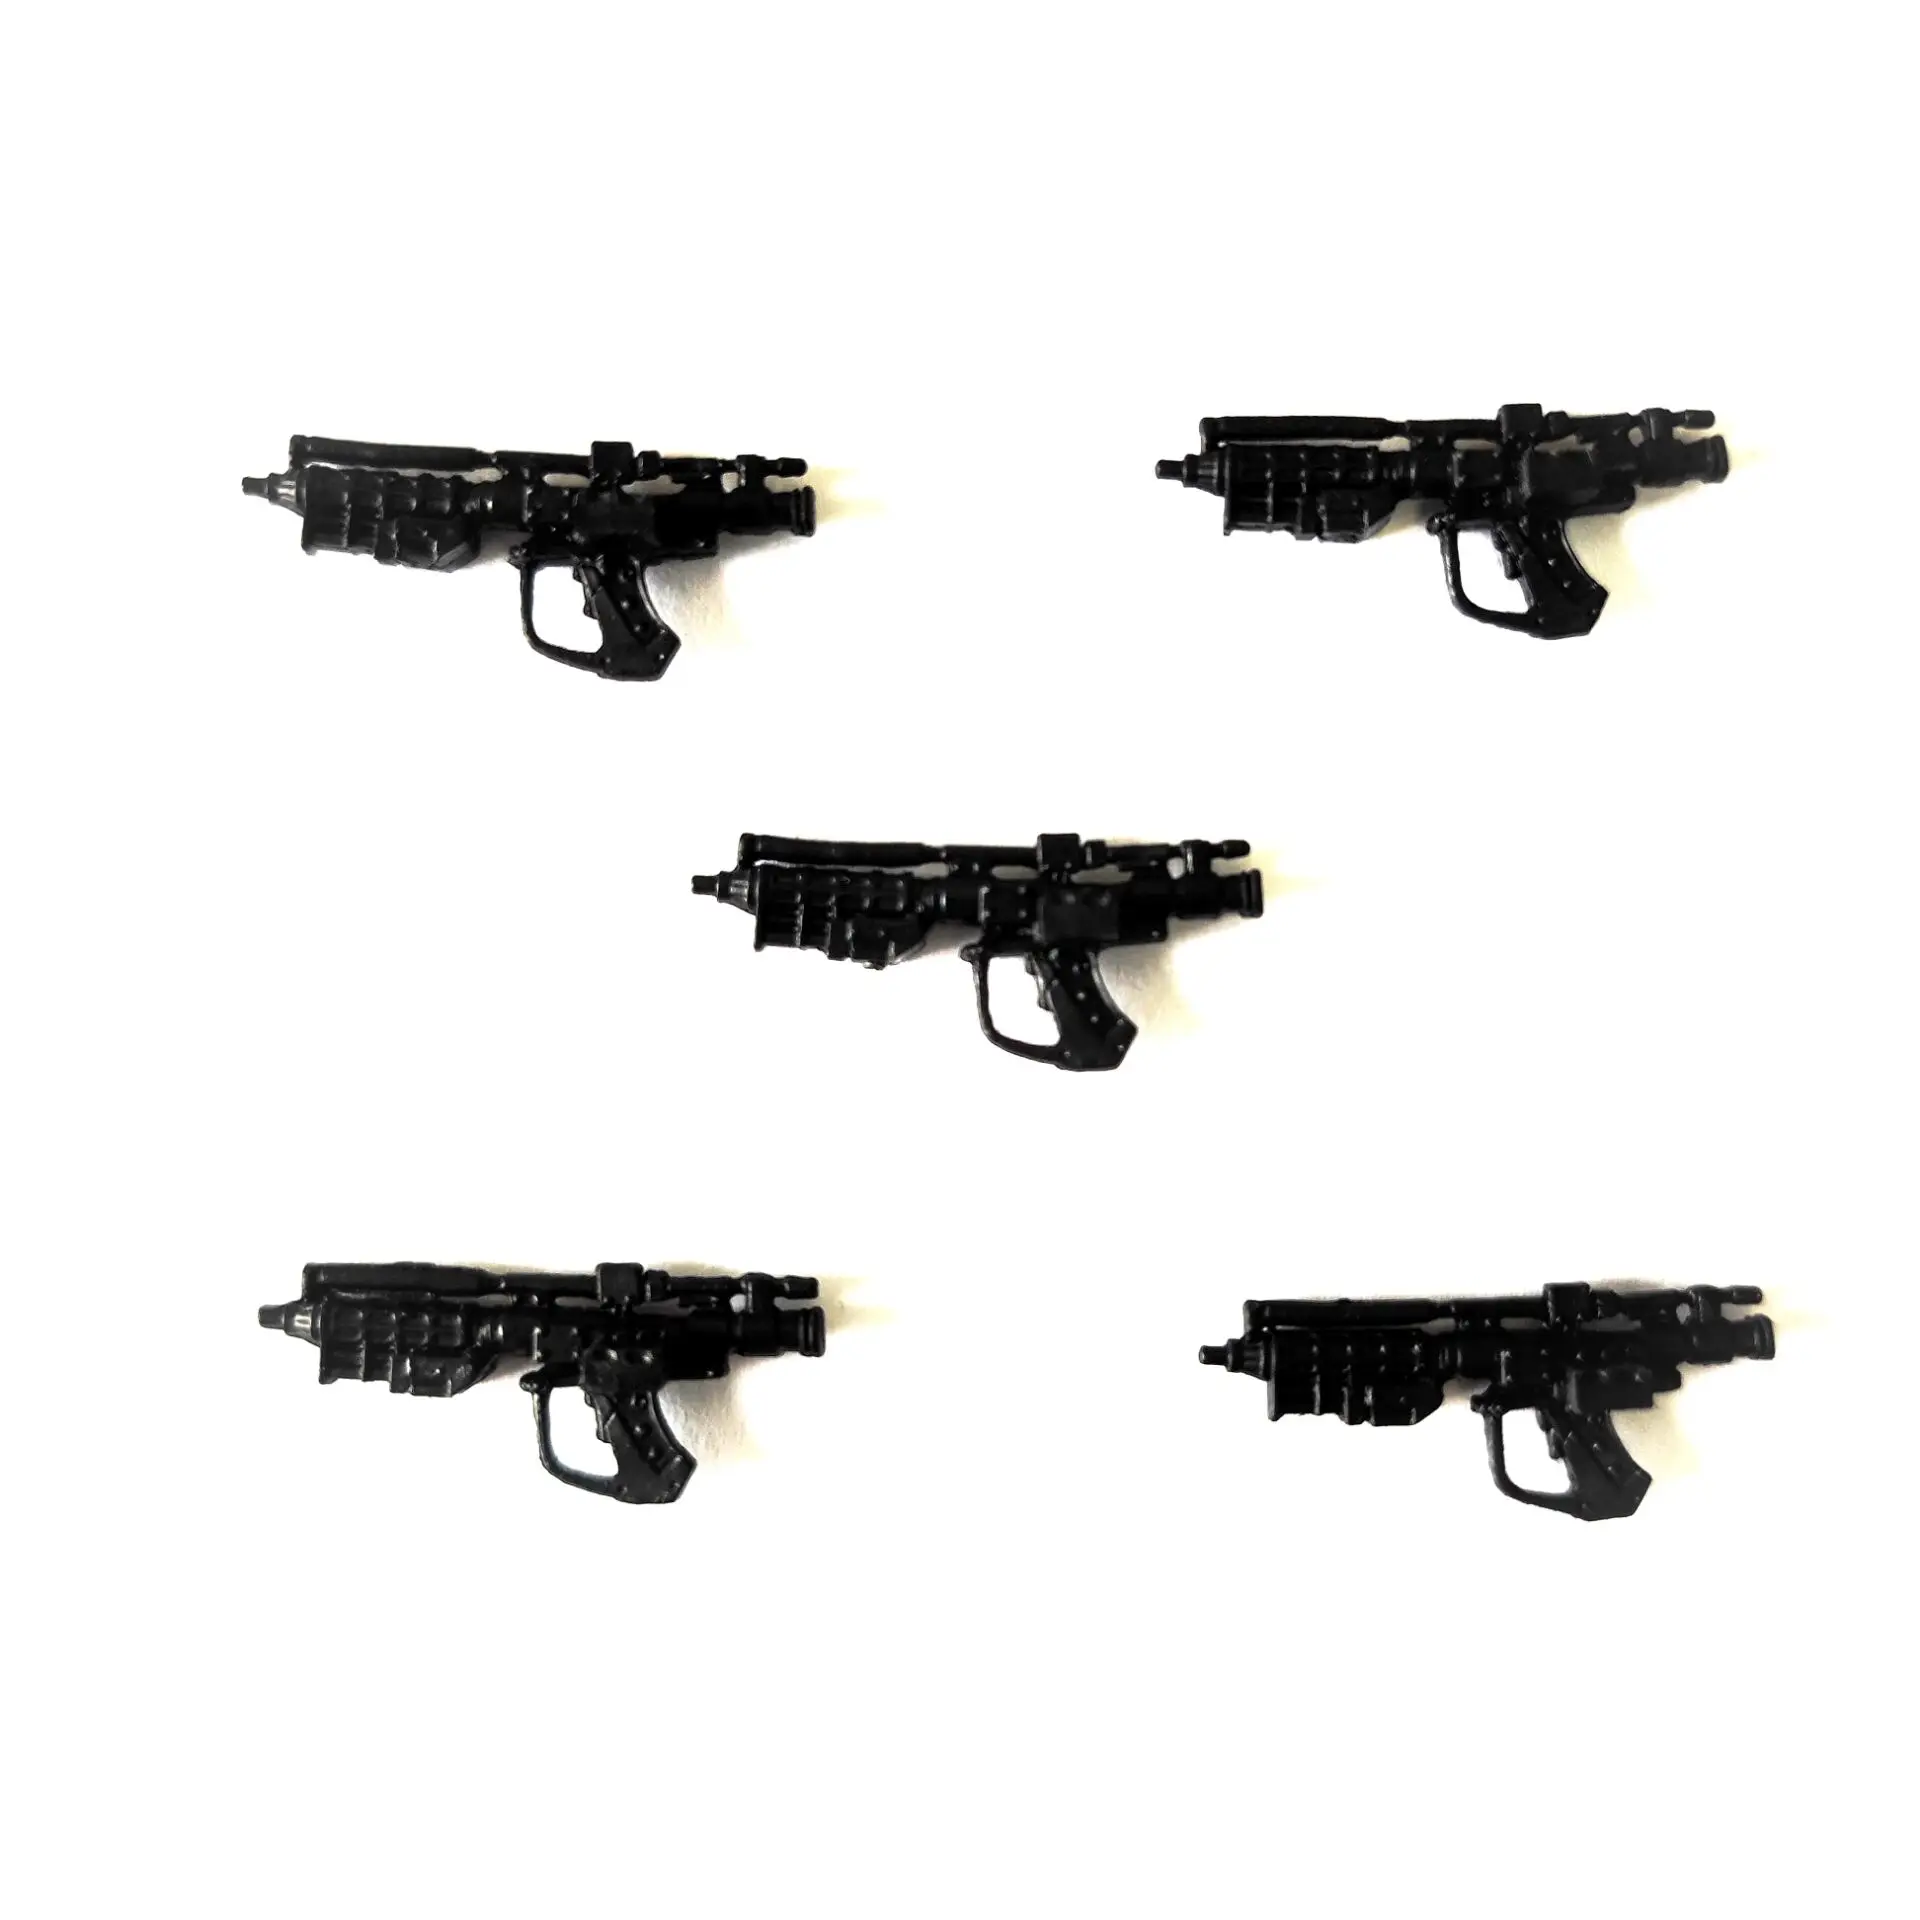 Pistola Airsoft C12 6mm + 2 Pacote de 1000 BB's 0.20g + 10 Co2 + 1 Óleo de  Silicone + Itens - Arena Lazer - Airsoft Armas Carabinas e Espingardas de  Pressão